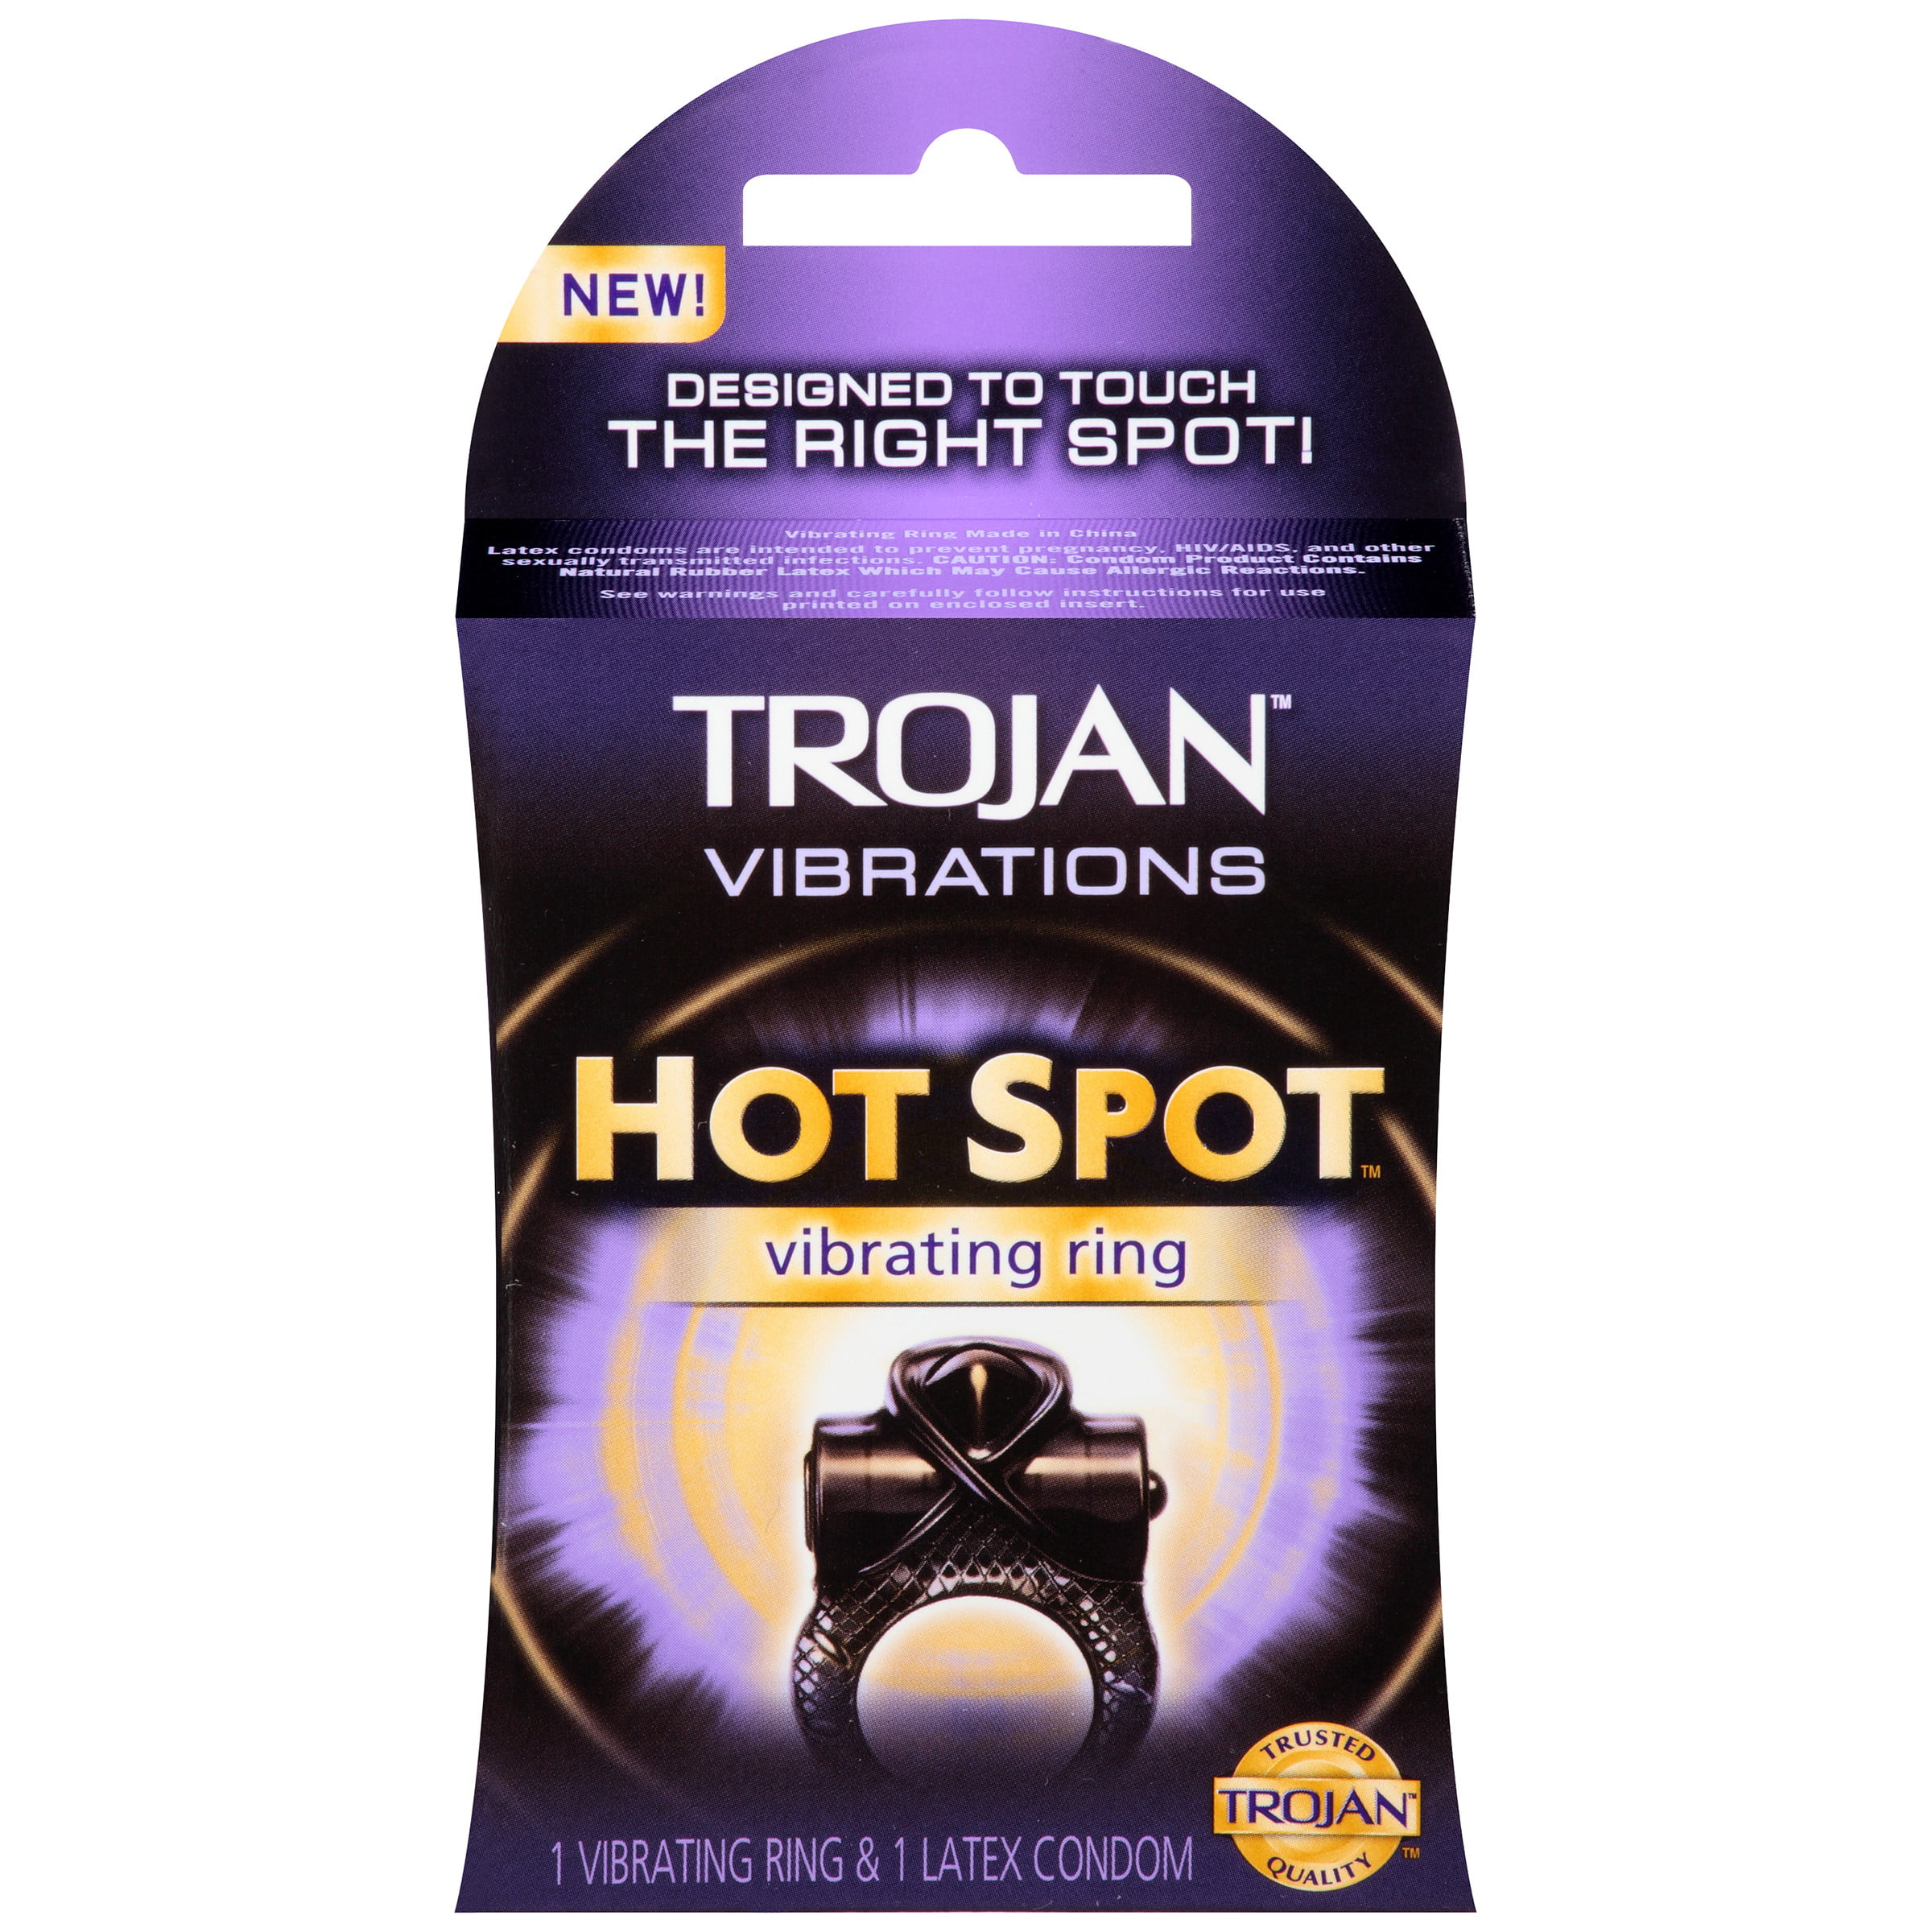 Trojan Vibrations Hot Spot Vibrating Ring.